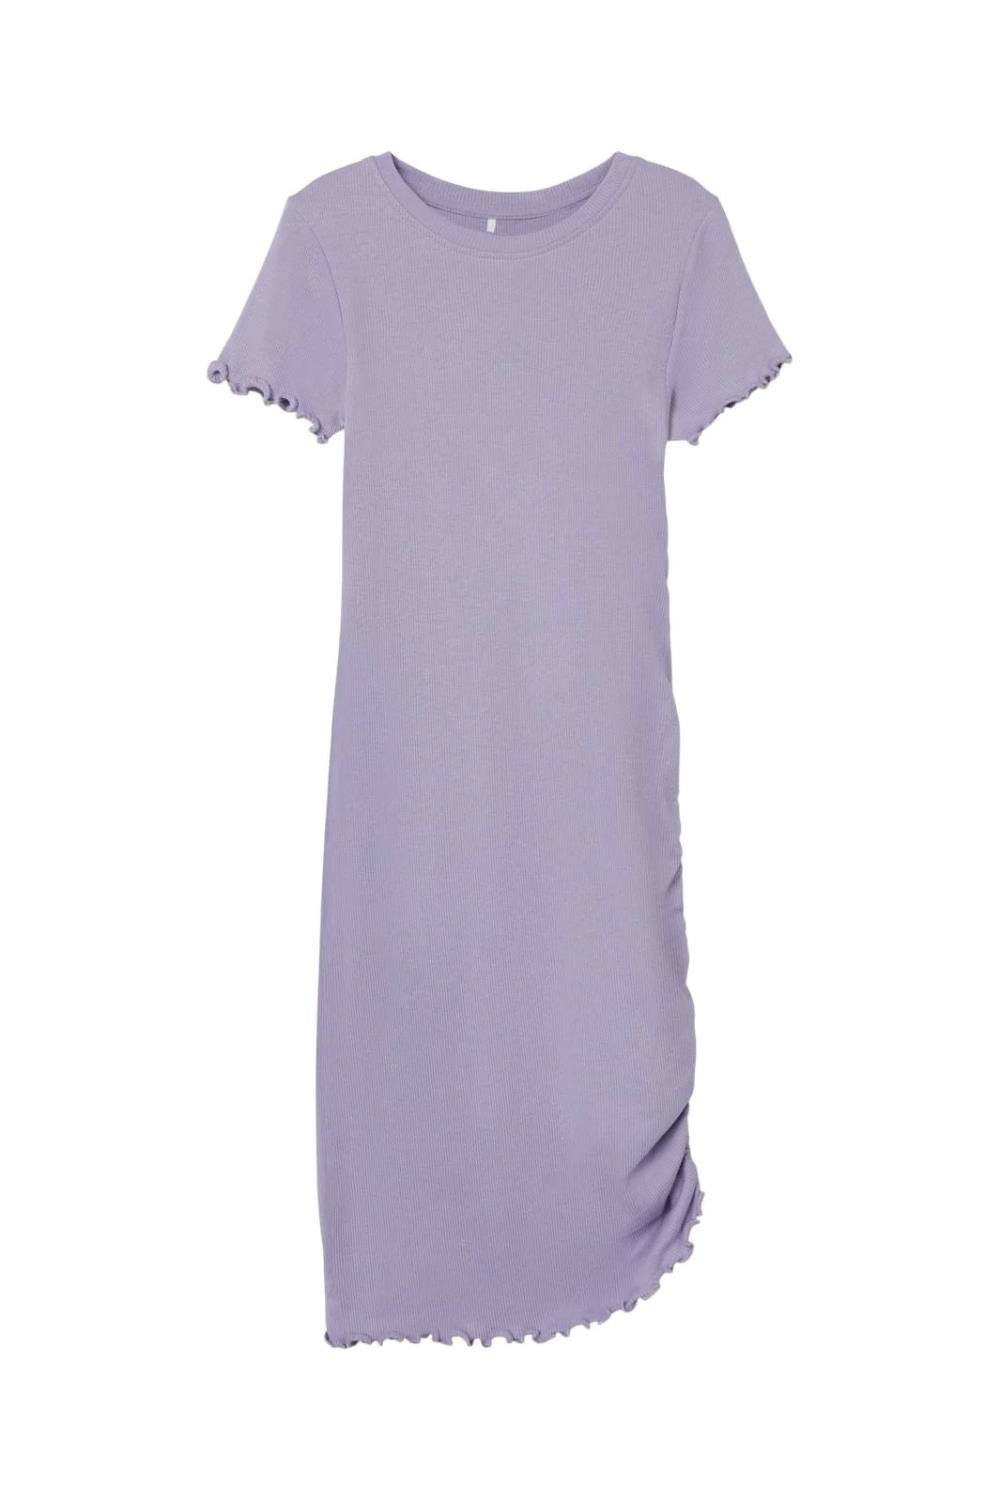 Dalilla midi dress, Heirloom lilac